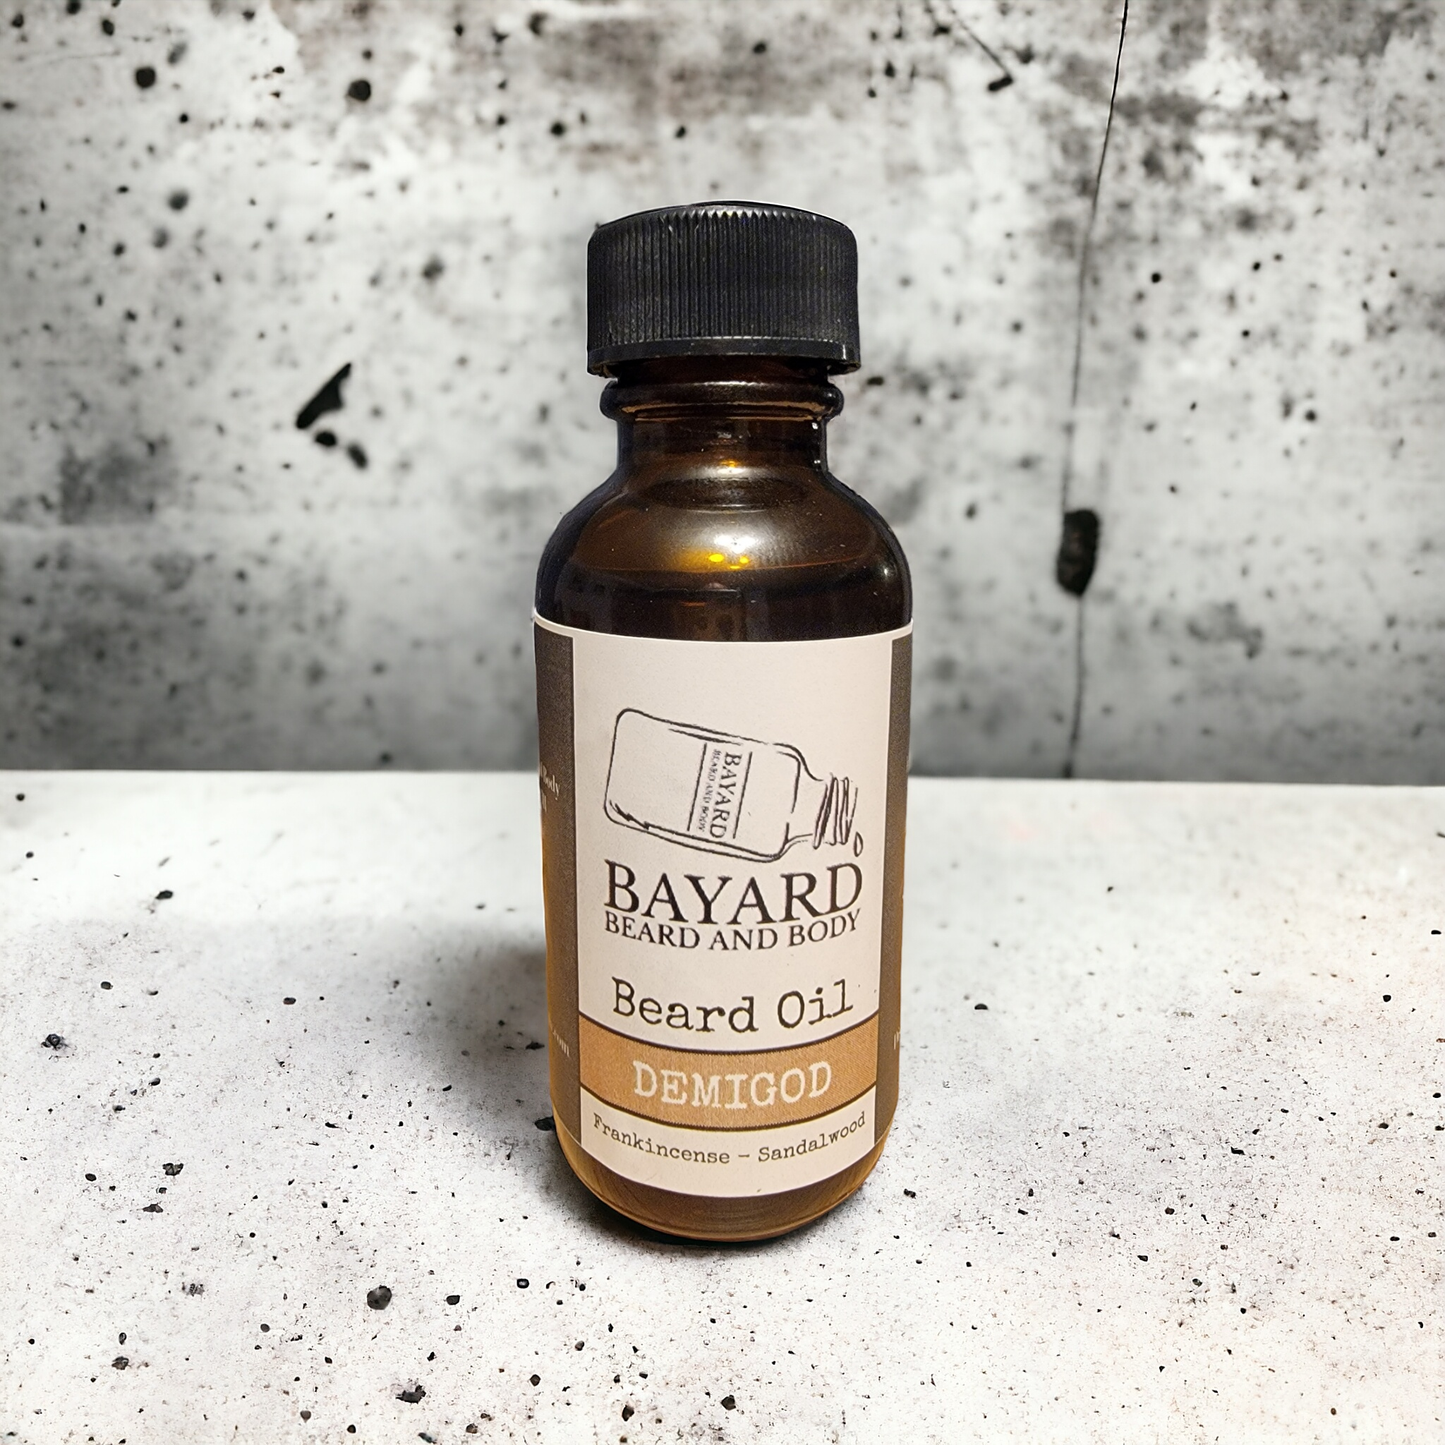 Demigod Beard Oil by Bayard Beard and Body